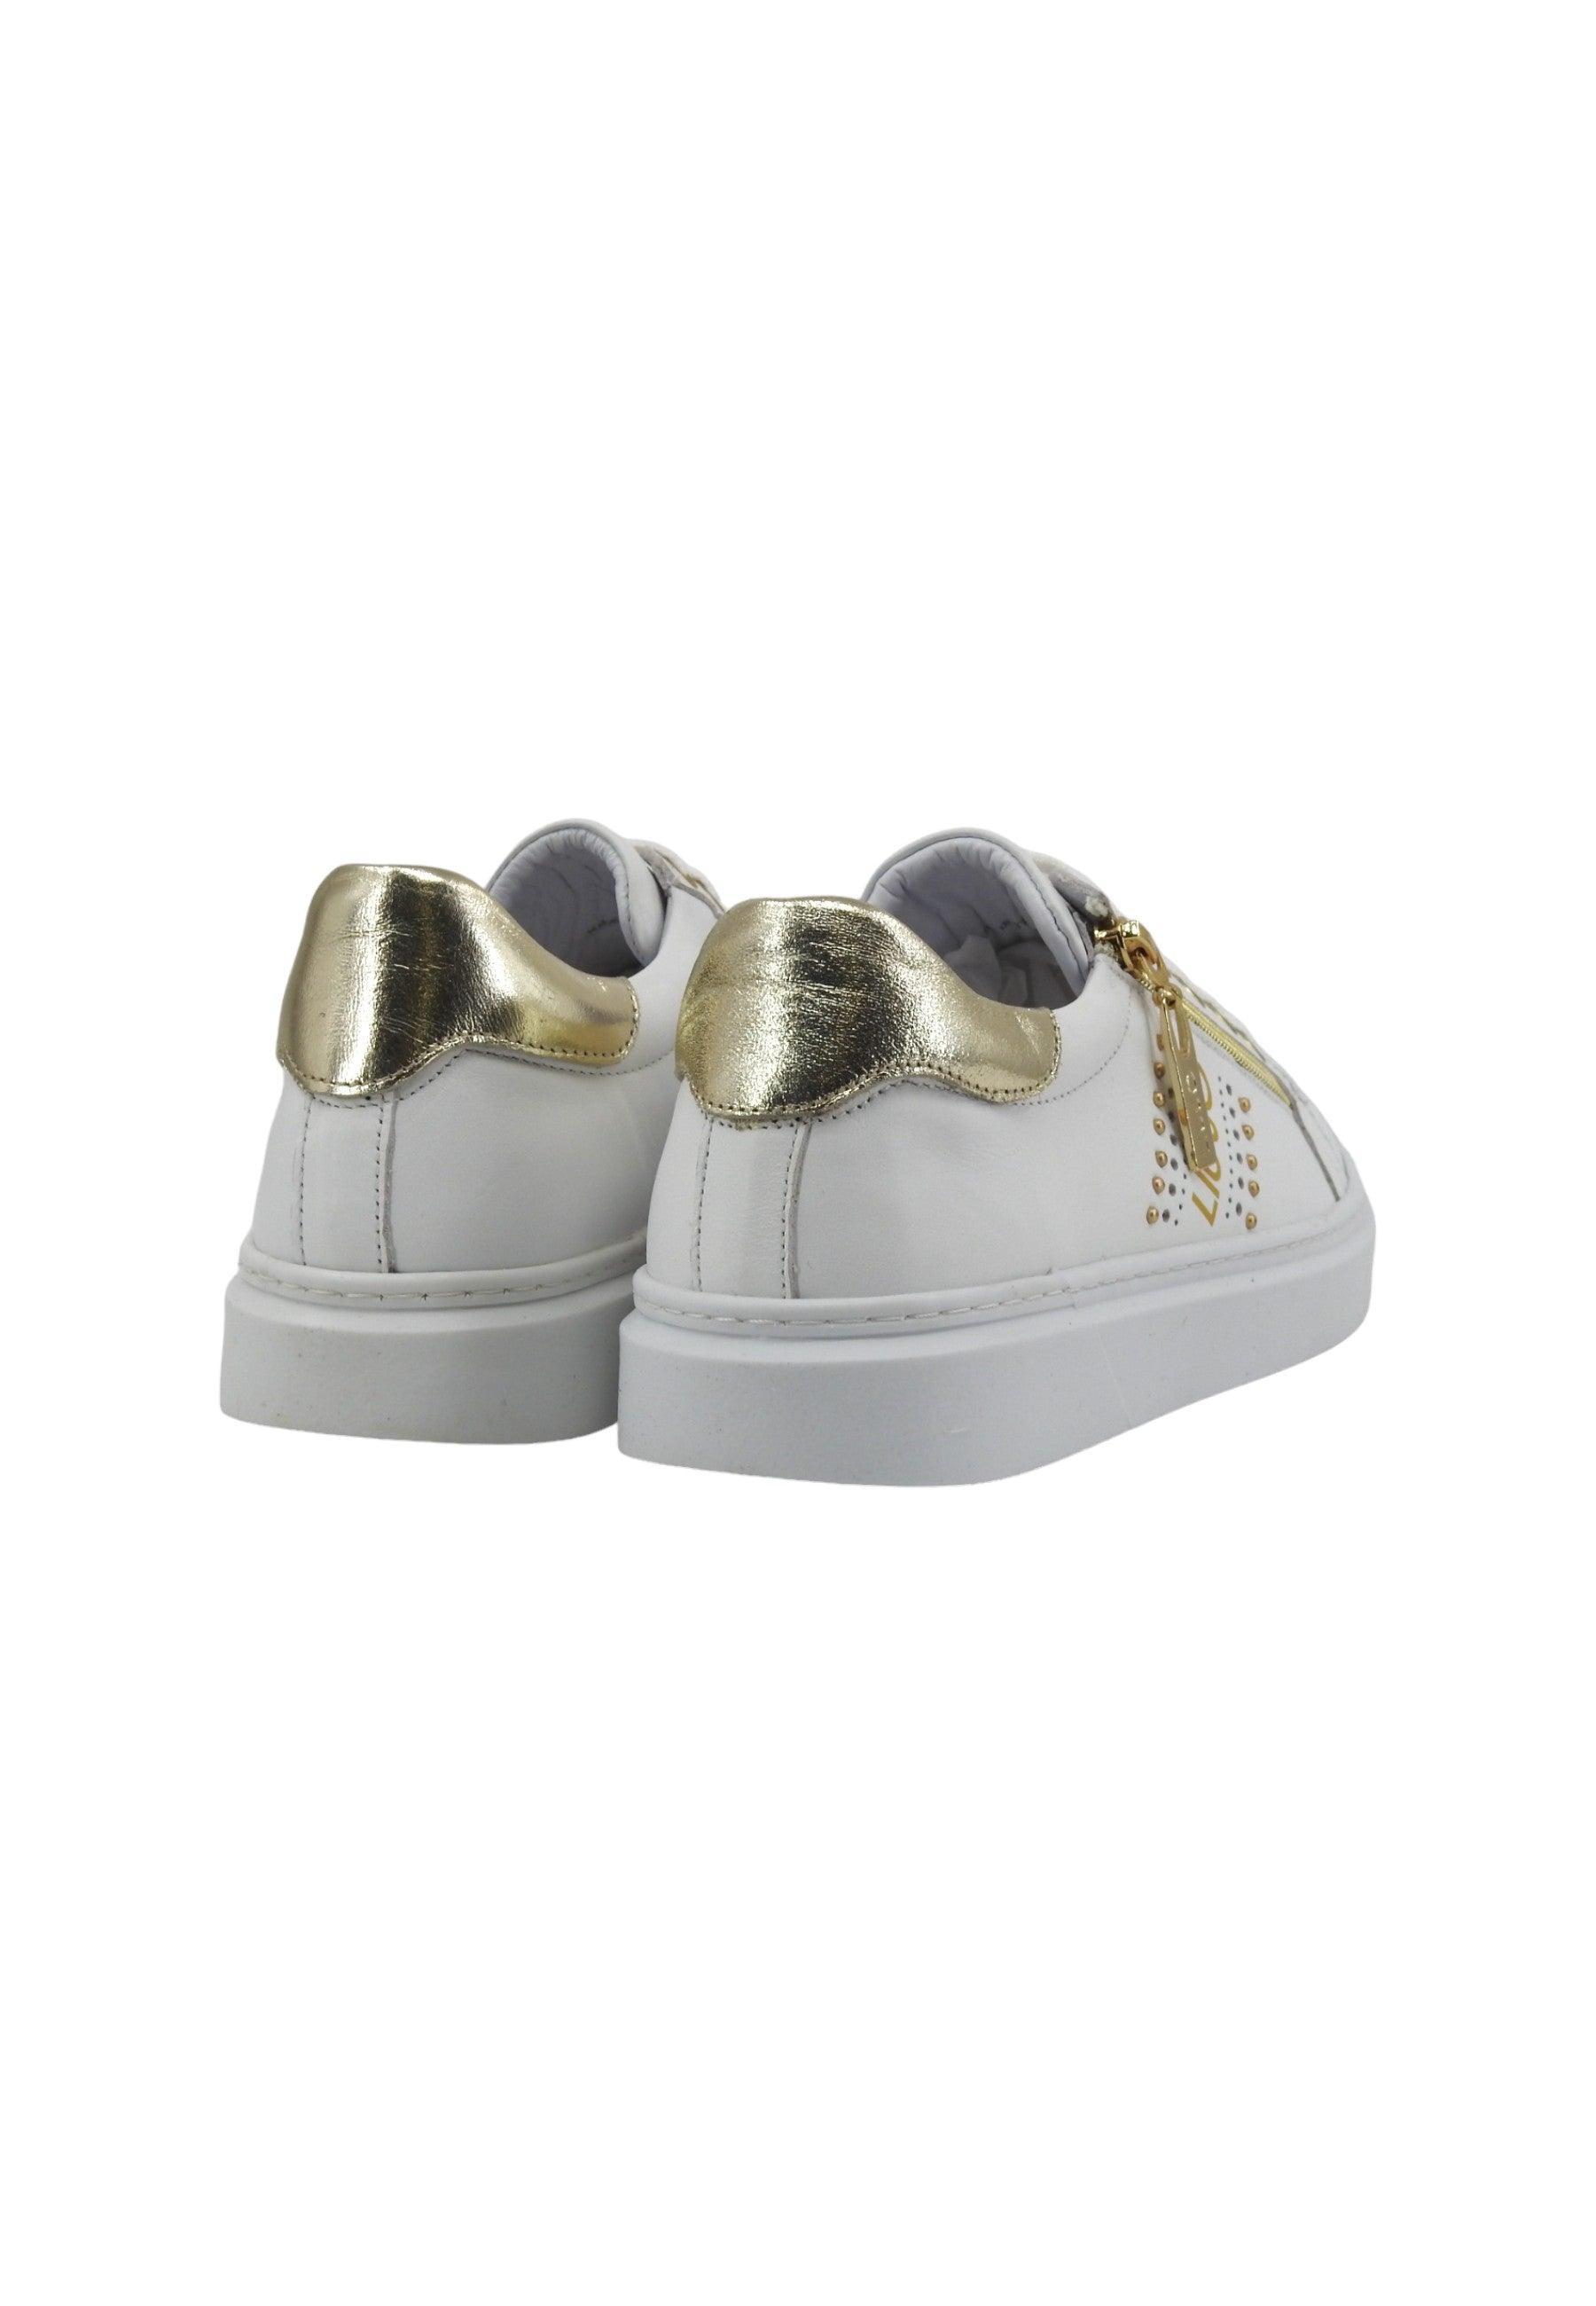 LIU JO Iris 10 Sneaker Donna White 4A4707PX468 - Sandrini Calzature e Abbigliamento